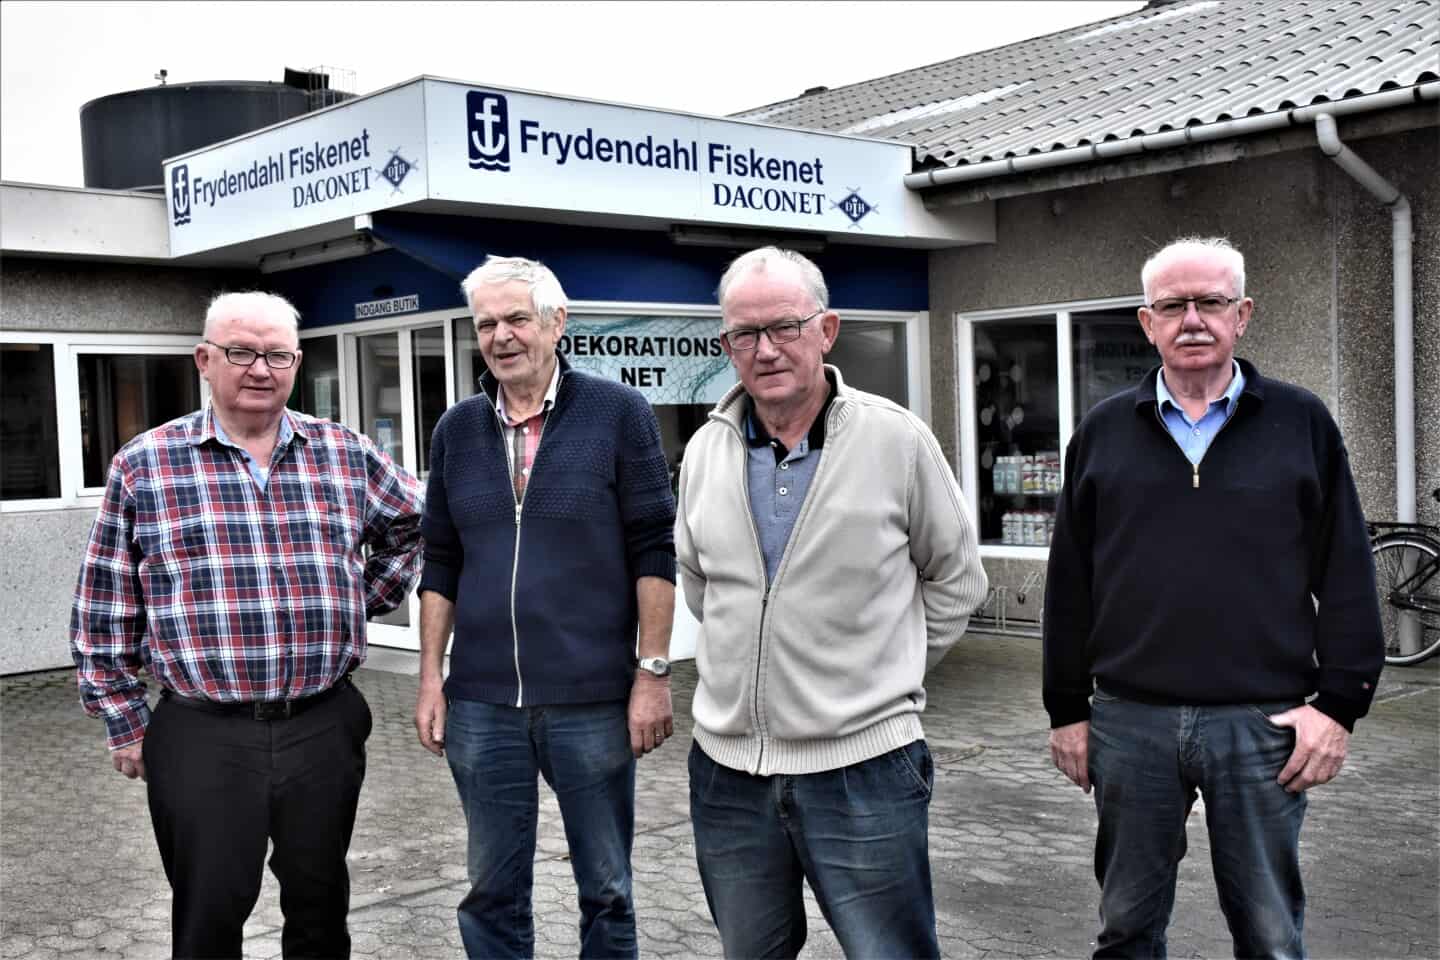 sponsoreret domæne Elendig Frydendahl jubilerer: Dynamisk erhvervs-kvartet fejrer 50 års jubilæum |  dbrs.dk